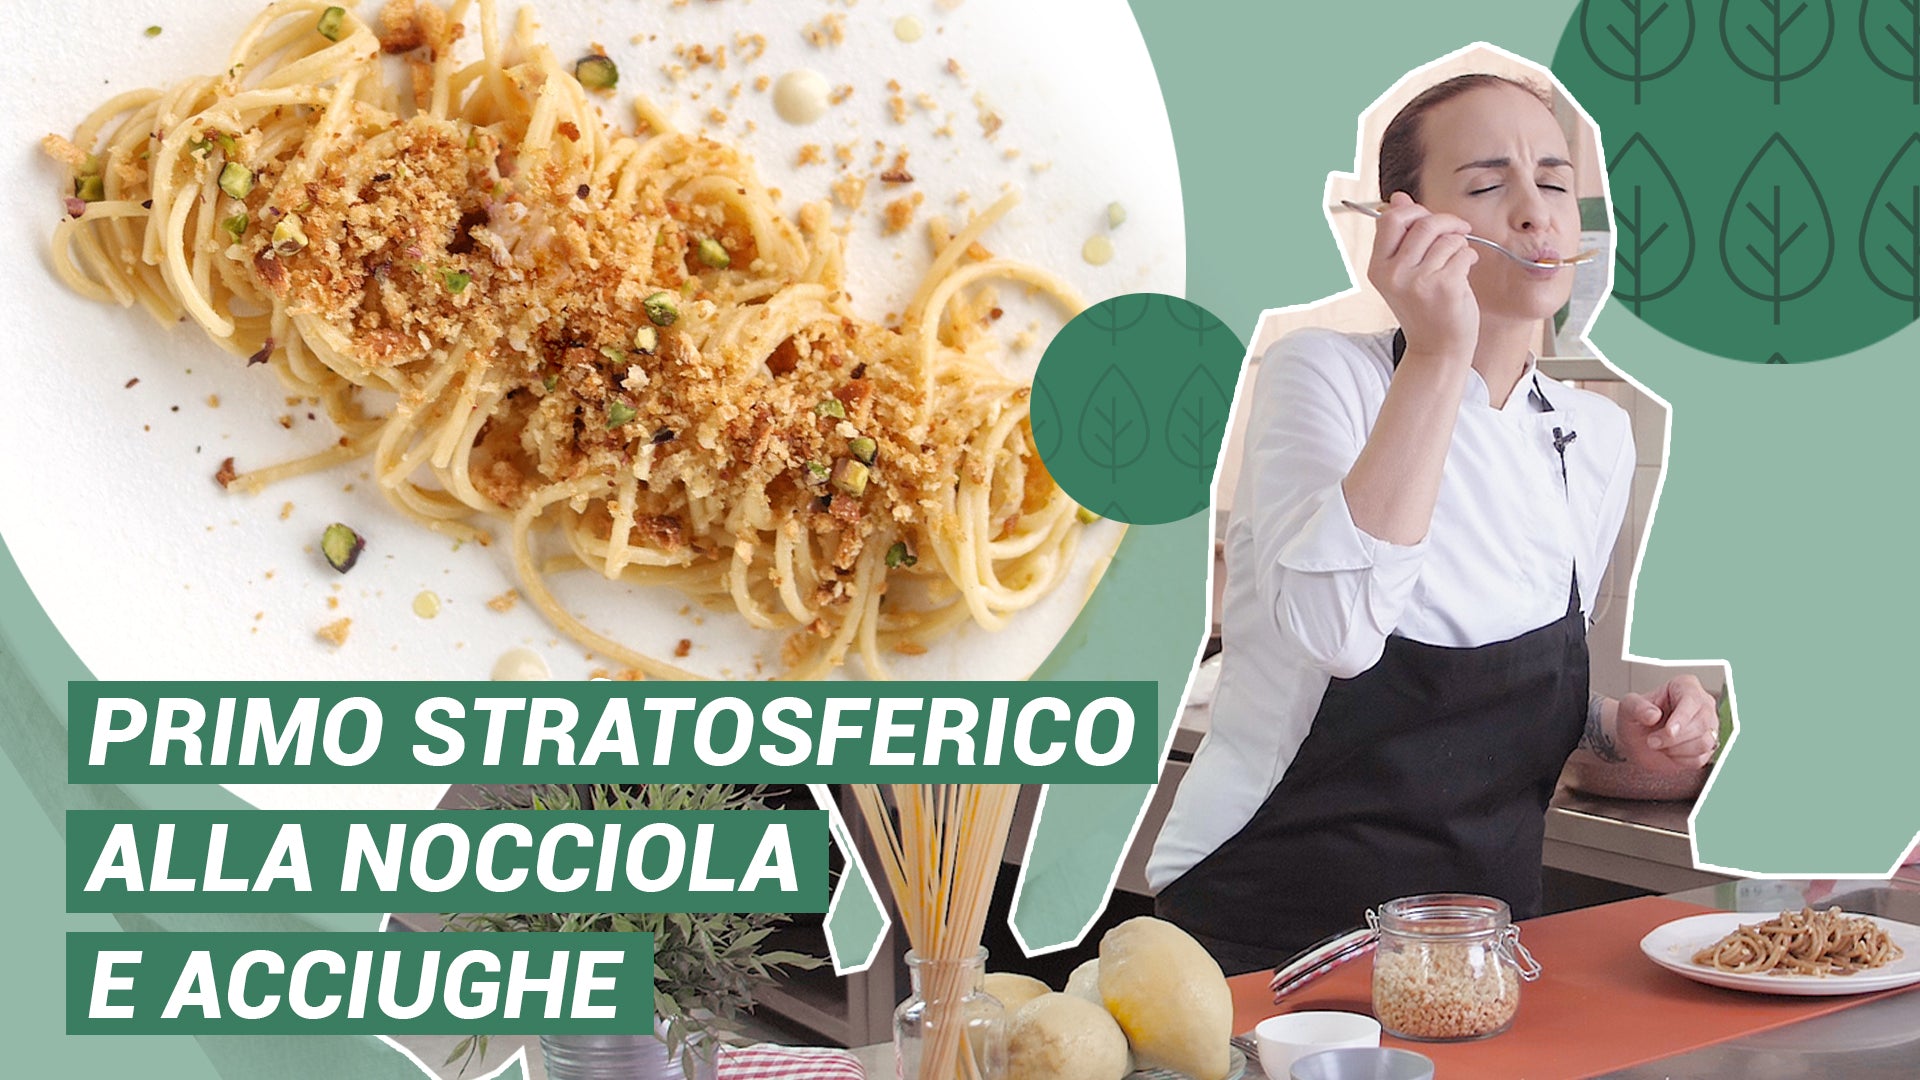 Spaghettone avec pâte de noisettes SaporePuro, anchois et citron